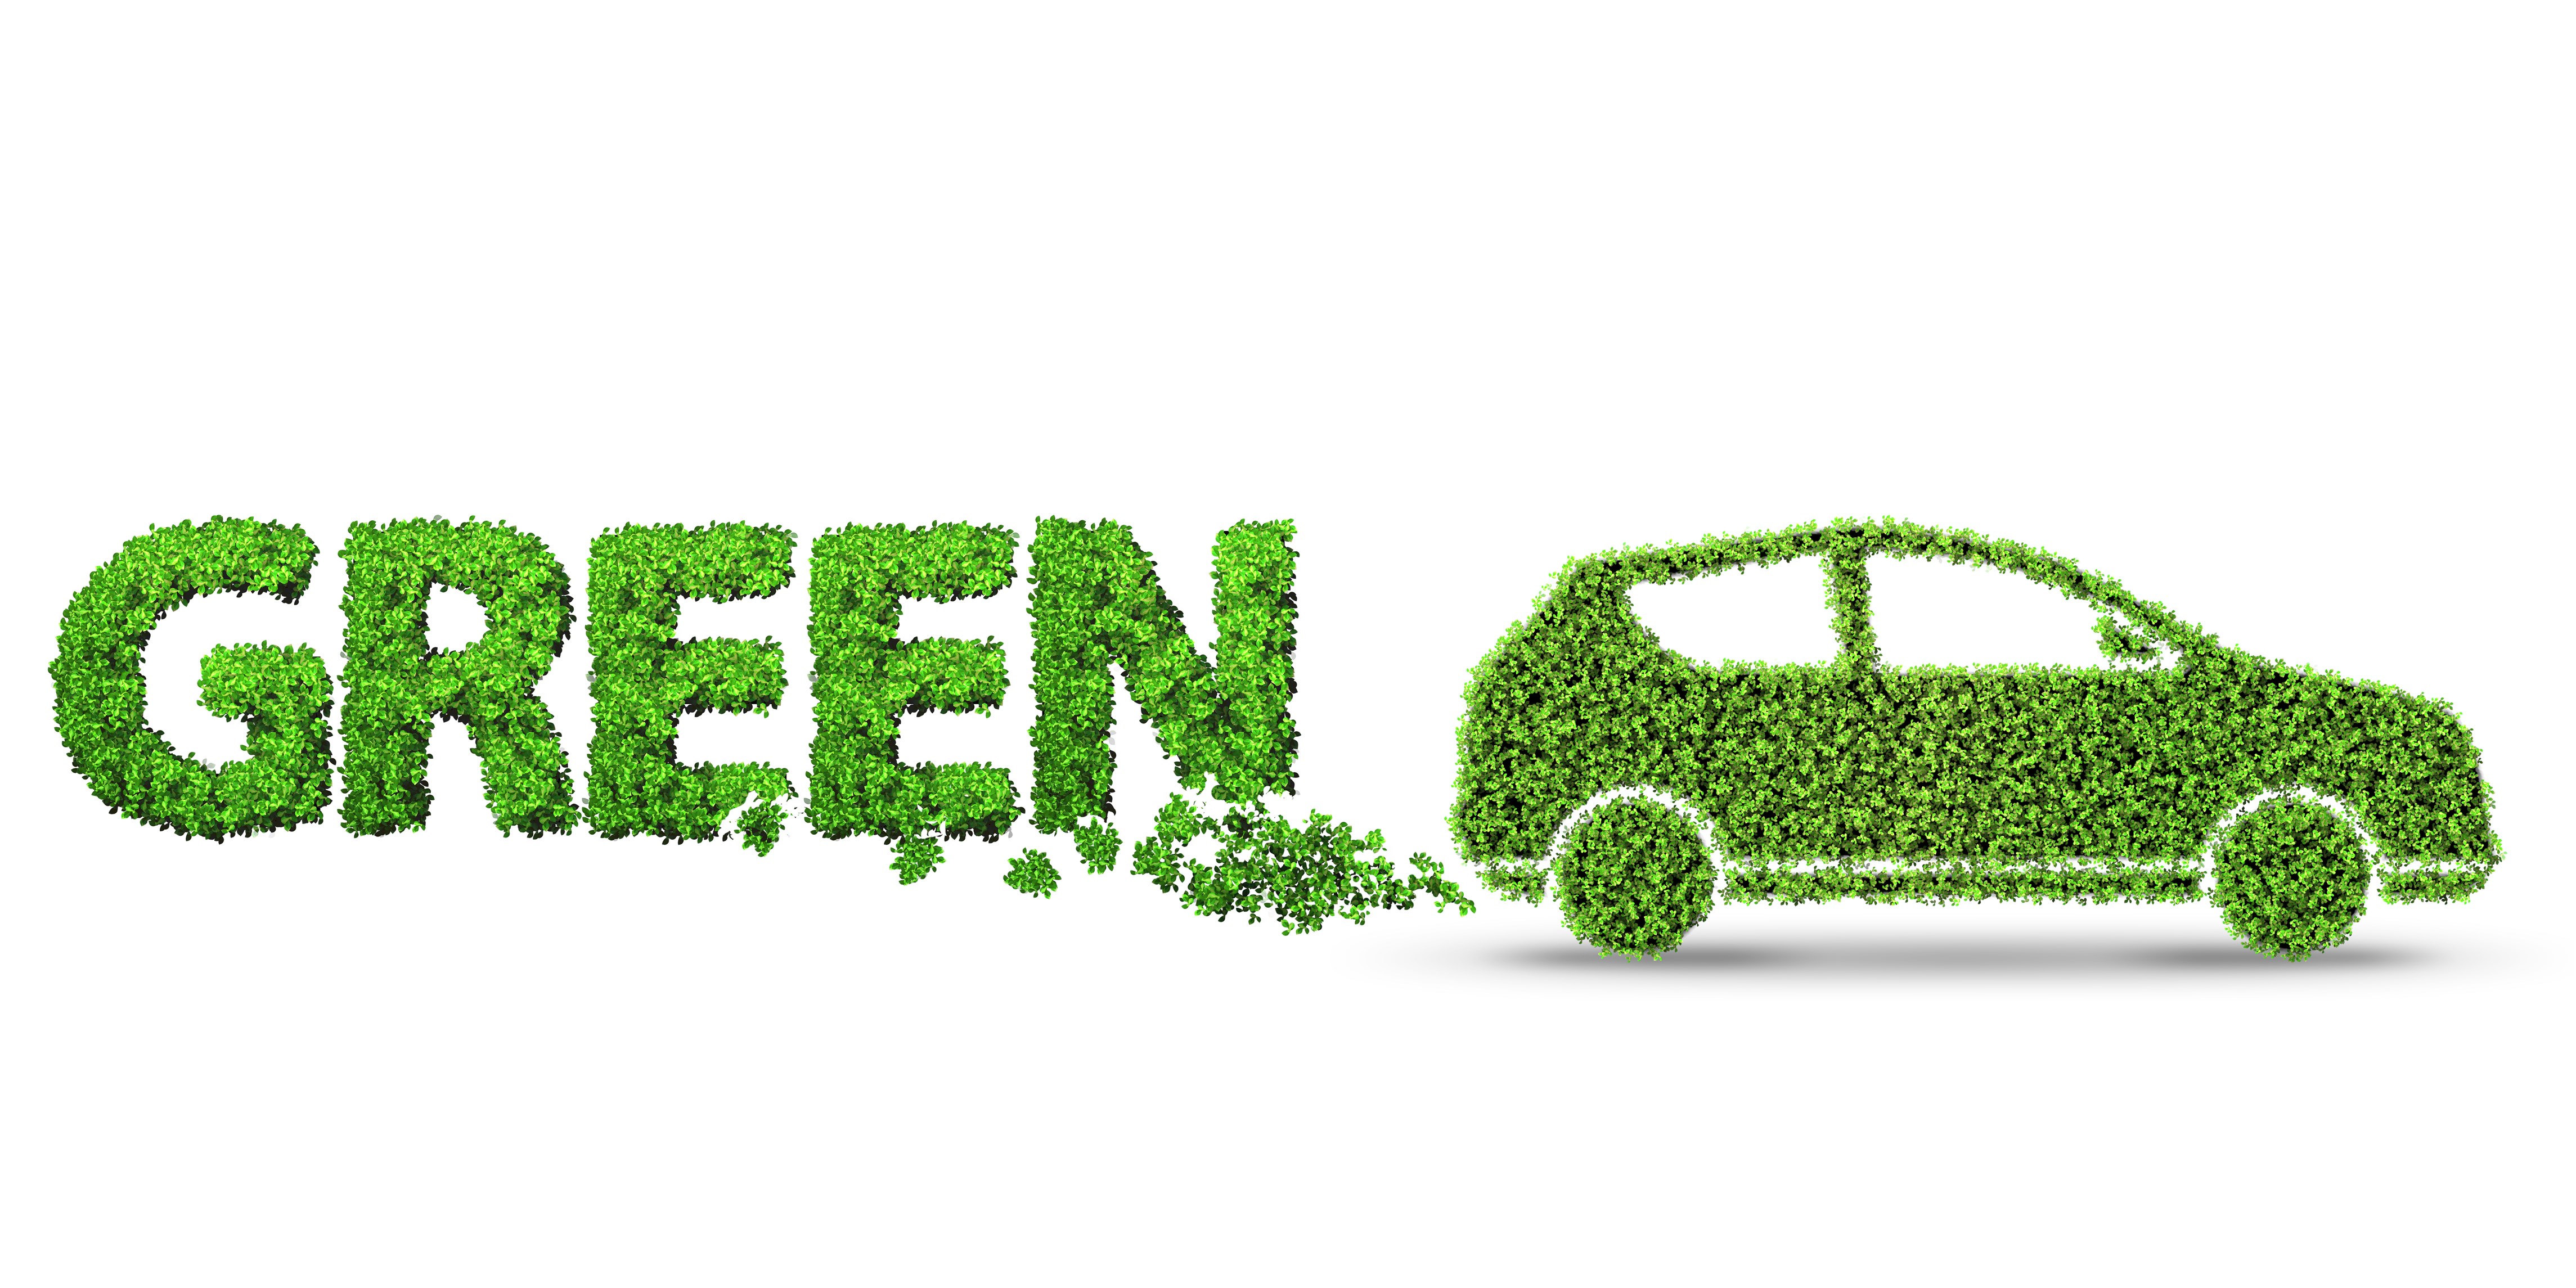 【聚焦风口】氢能引起全球重视 氢燃料电池汽车迎高速发展